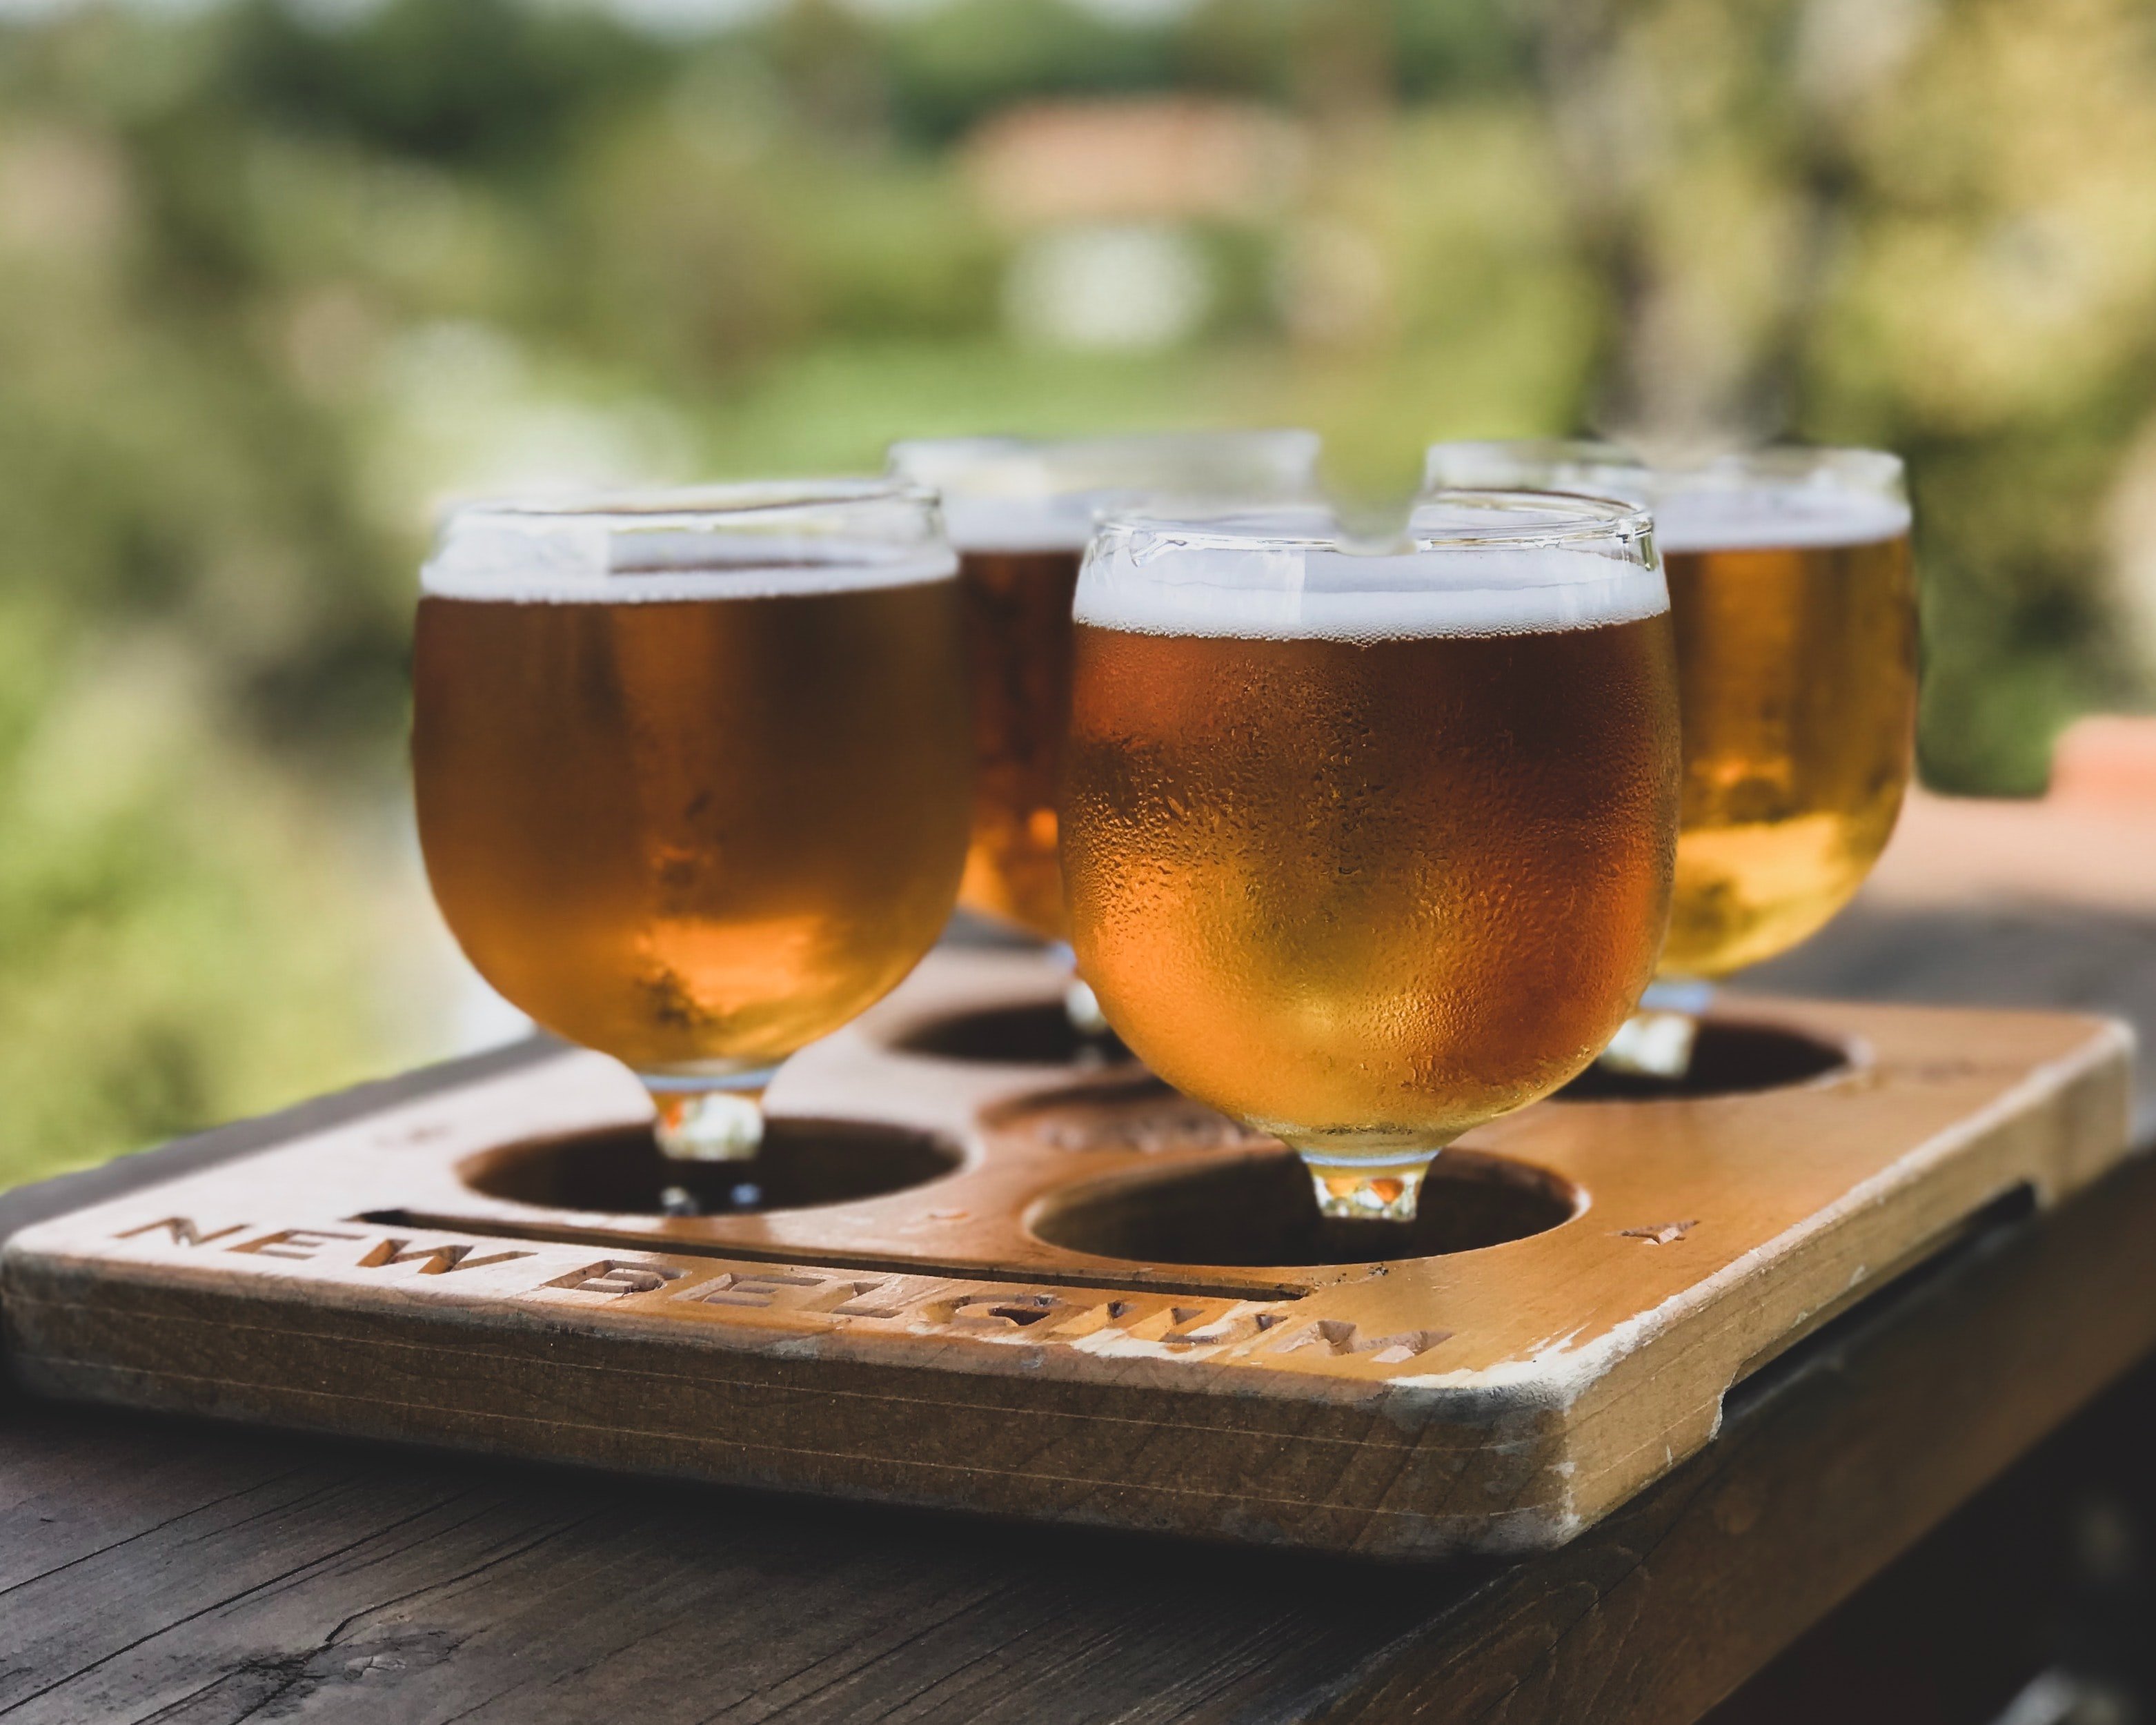 La cerveza más natural de Damm es la más vendida en el Gourmet de El Corte Inglés